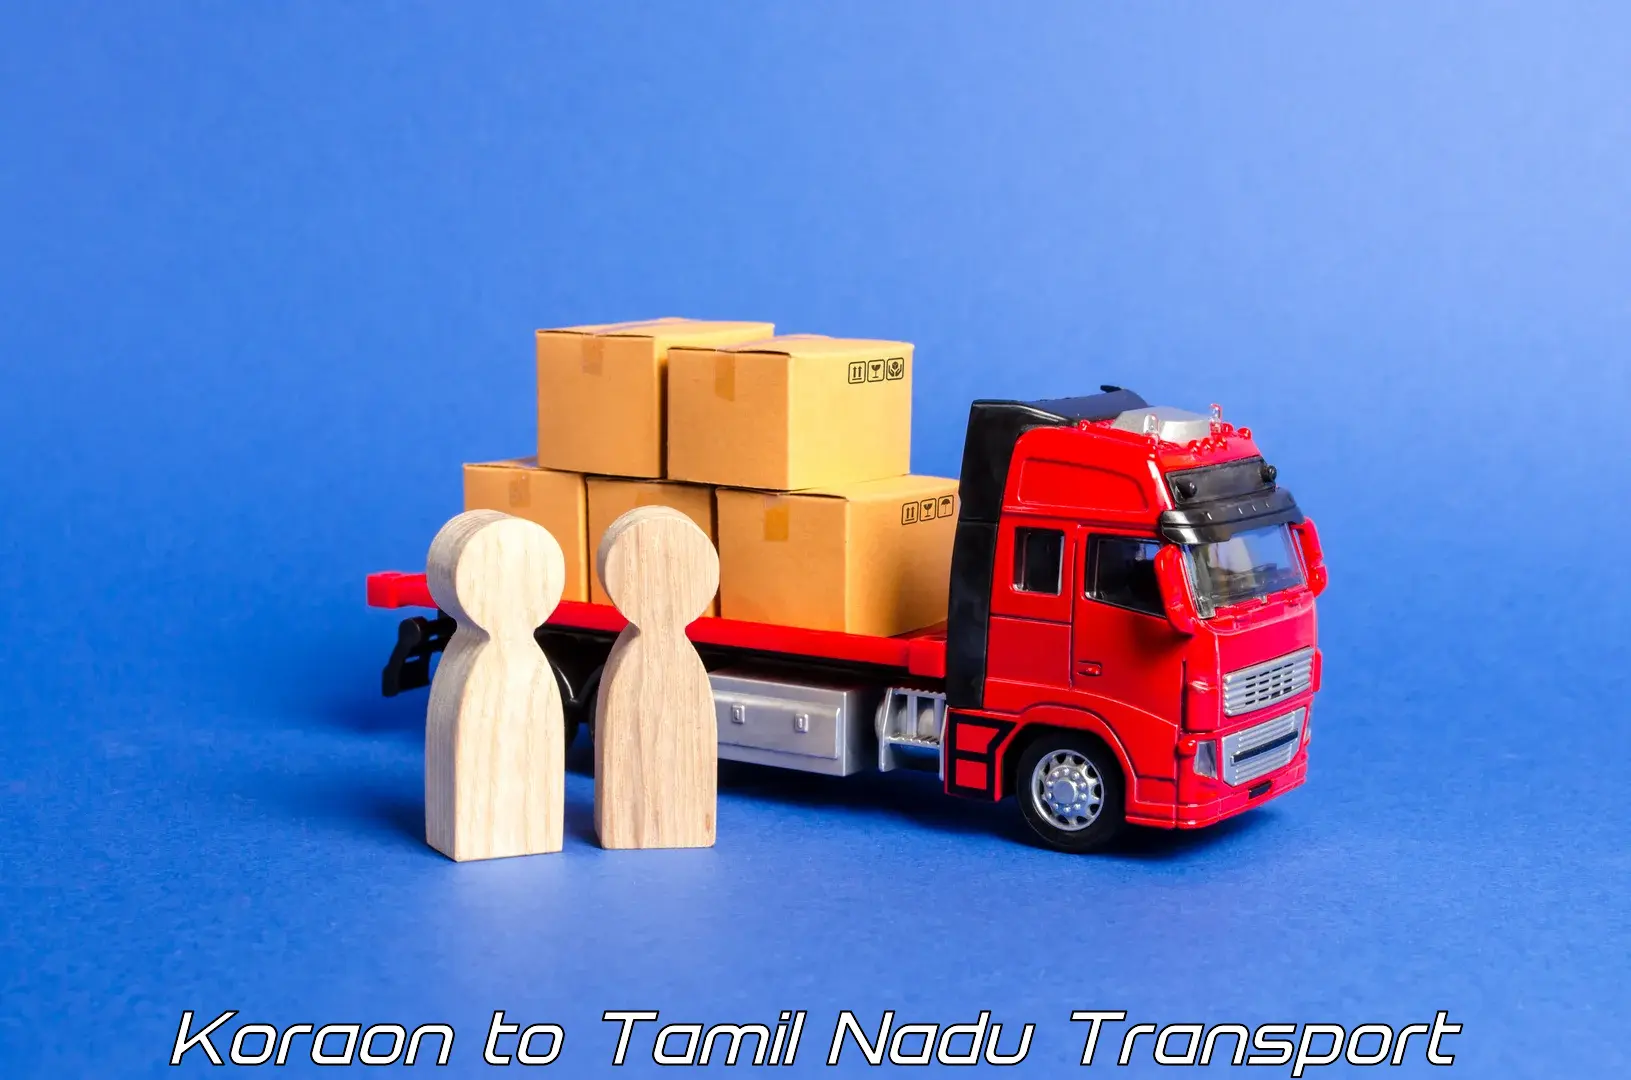 Cargo train transport services Koraon to Polur